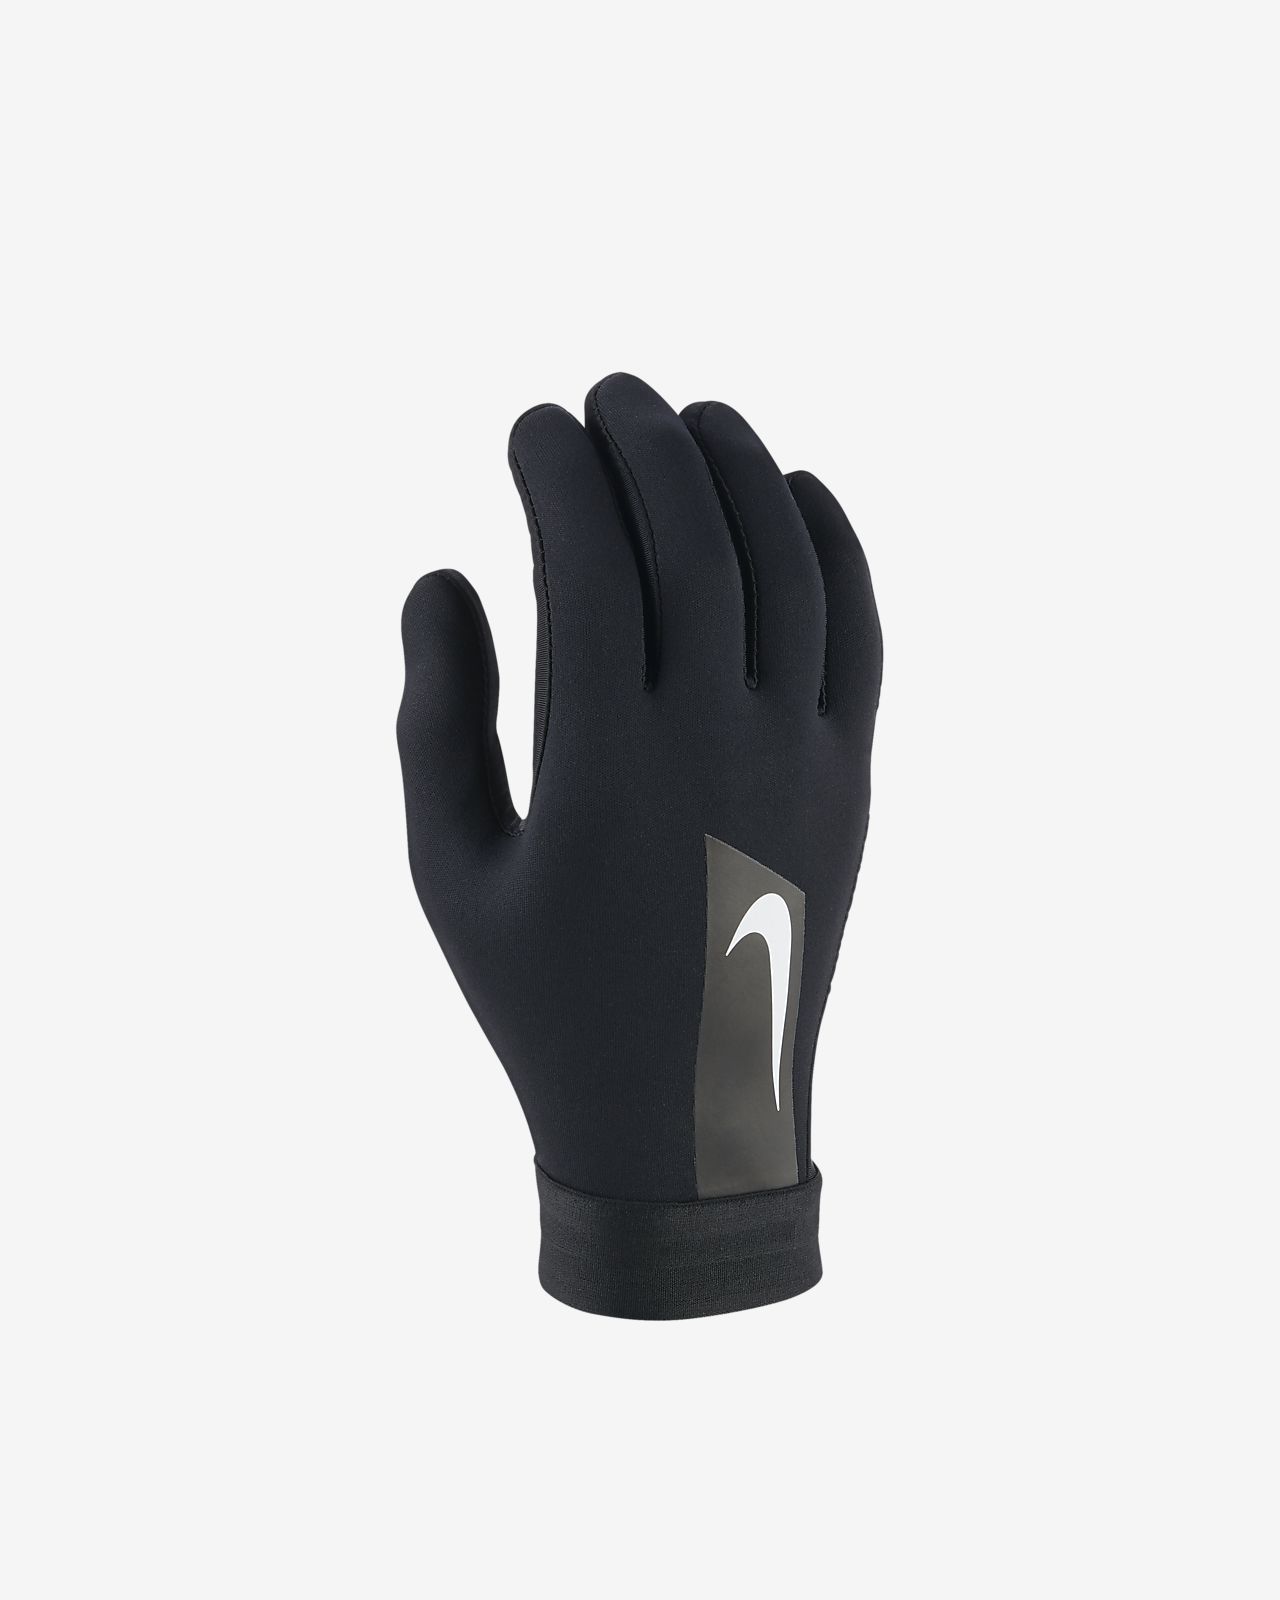 Nike Men S Gloves Size Chart